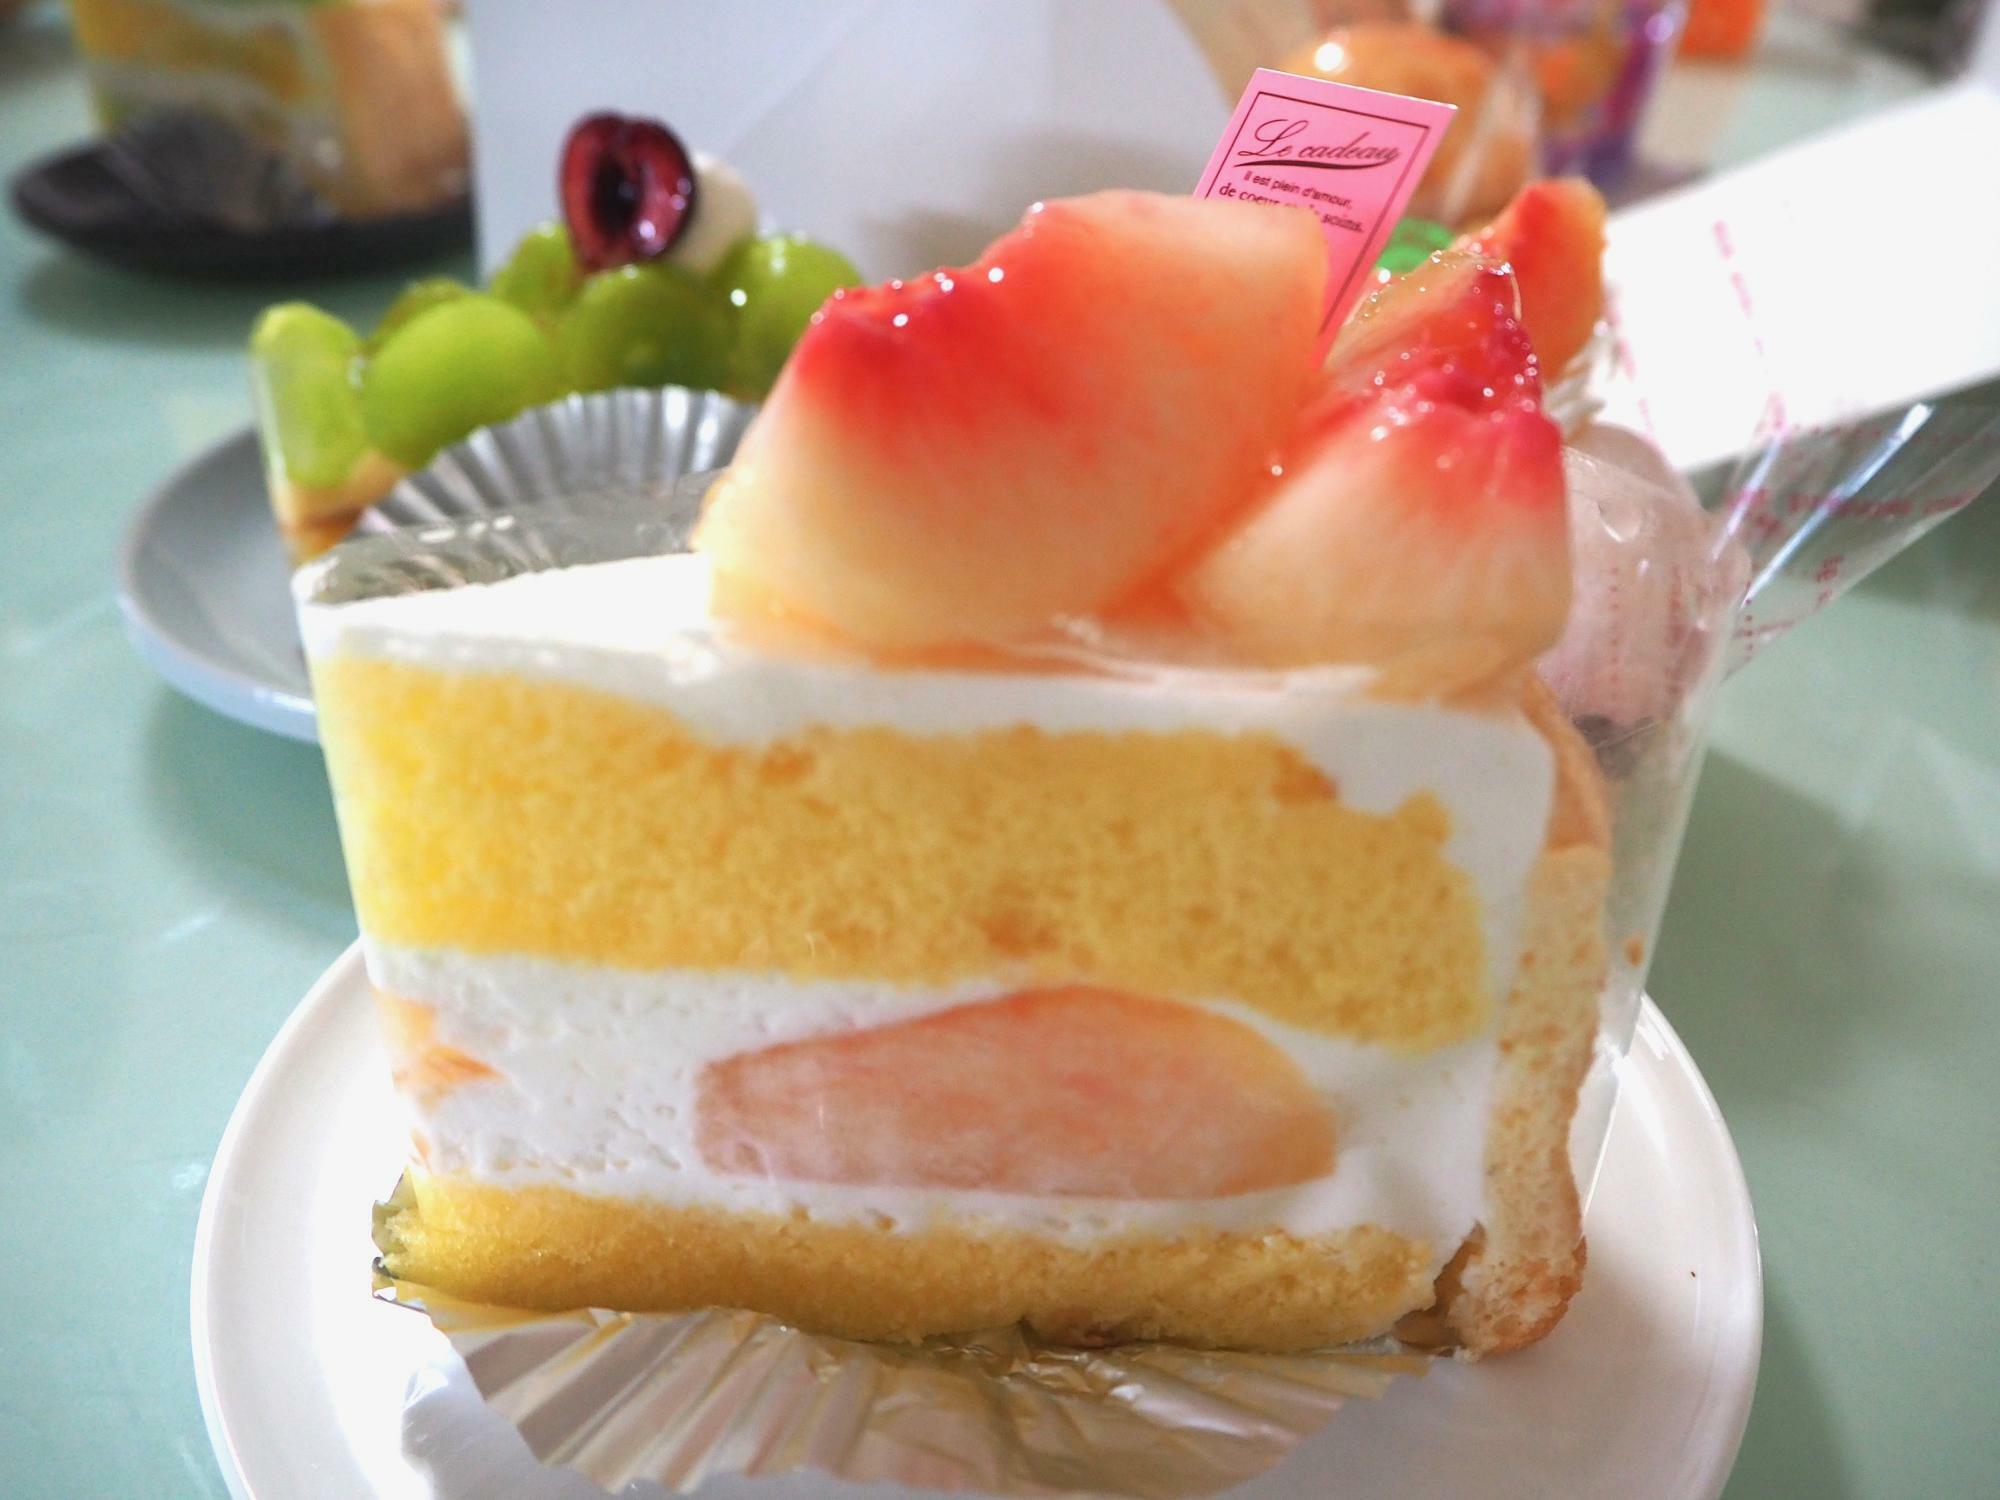 「桃のスペシャルショートケーキ」の断面